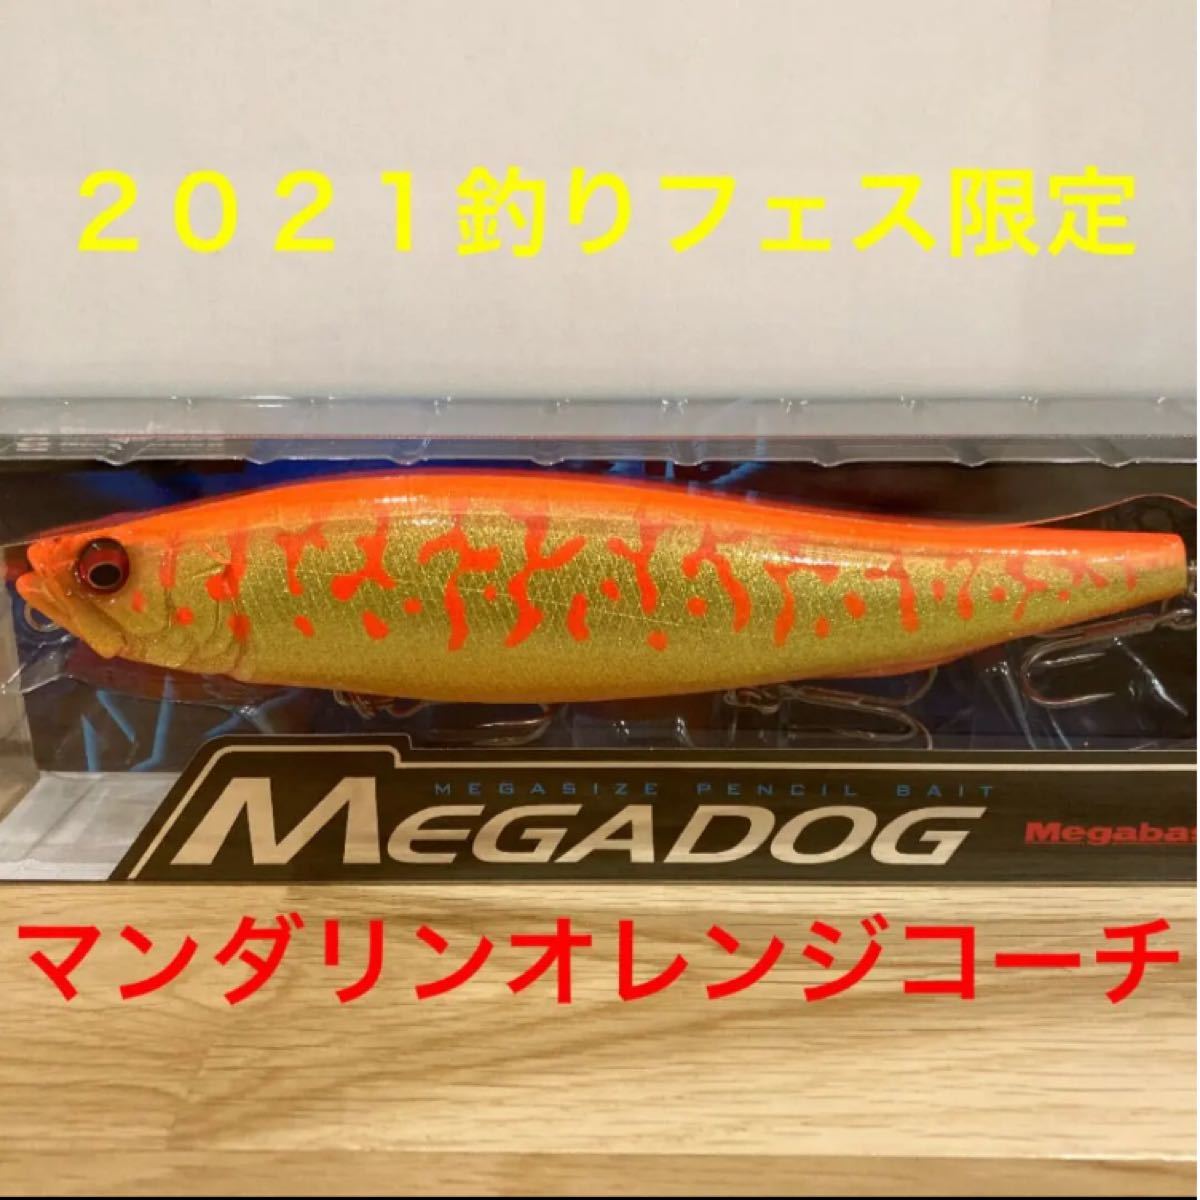 メガバス　メガドッグ　GLXマンダリンオレンジコーチ 2021釣りフェスティバル限定カラー